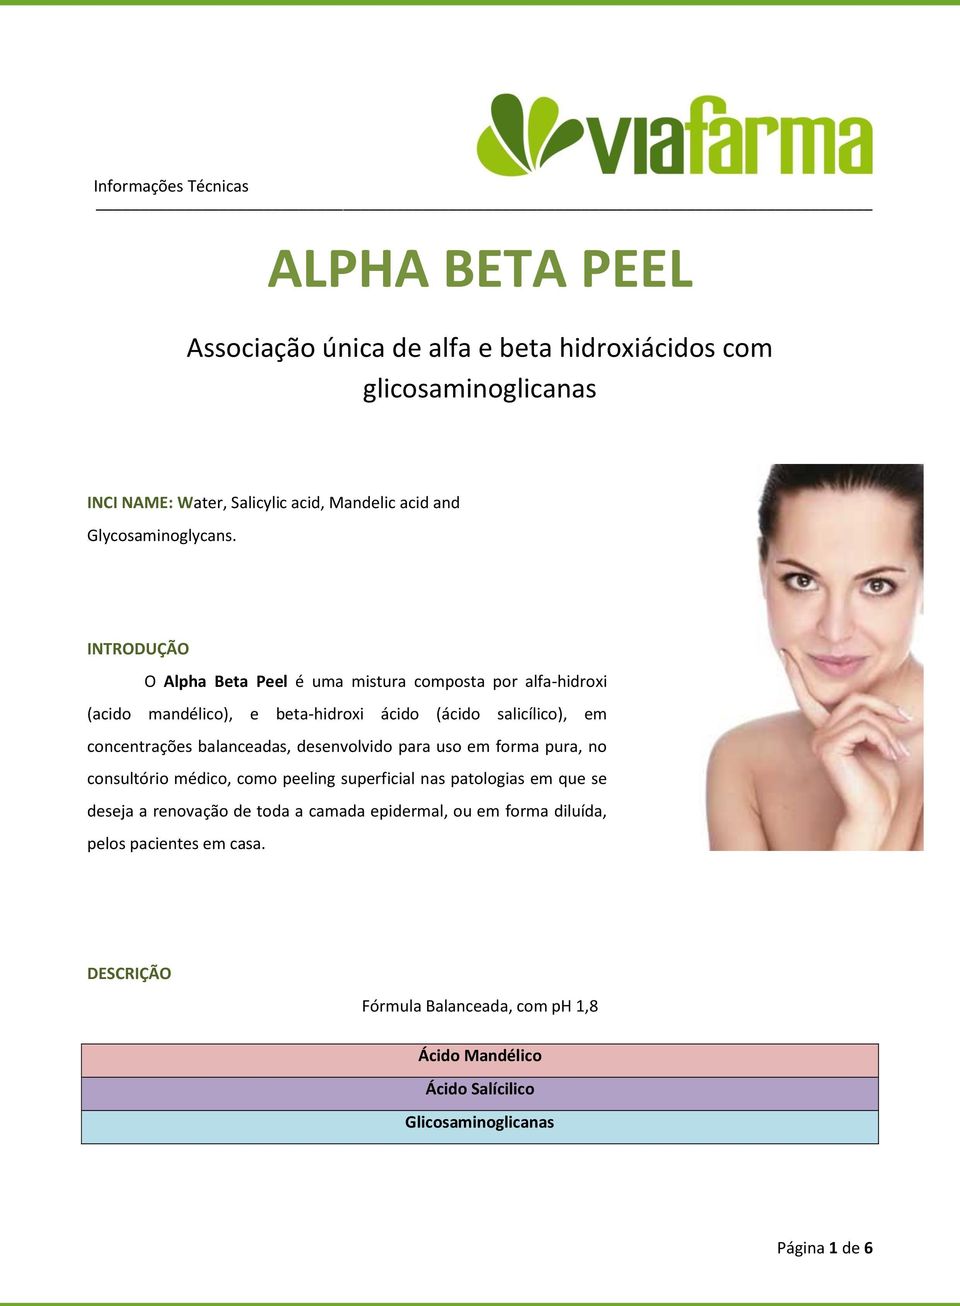 INTRODUÇÃO O Alpha Beta Peel é uma mistura composta por alfa-hidroxi (acido mandélico), e beta-hidroxi ácido (ácido salicílico), em concentrações balanceadas,